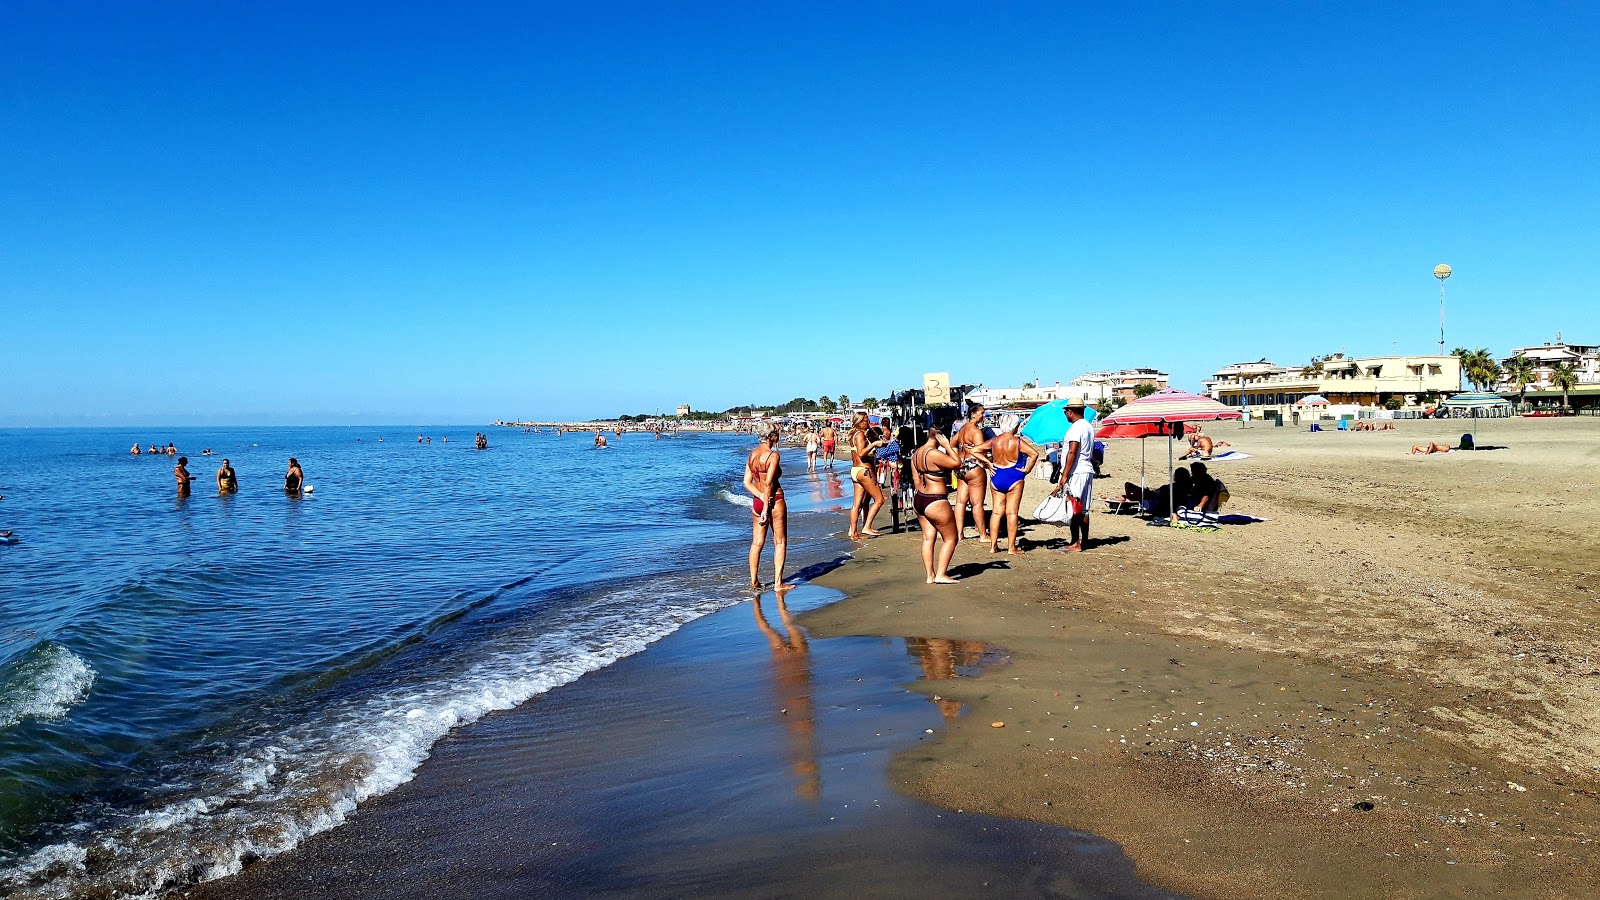 Zdjęcie Spiaggia Attrezzata obszar kurortu nadmorskiego